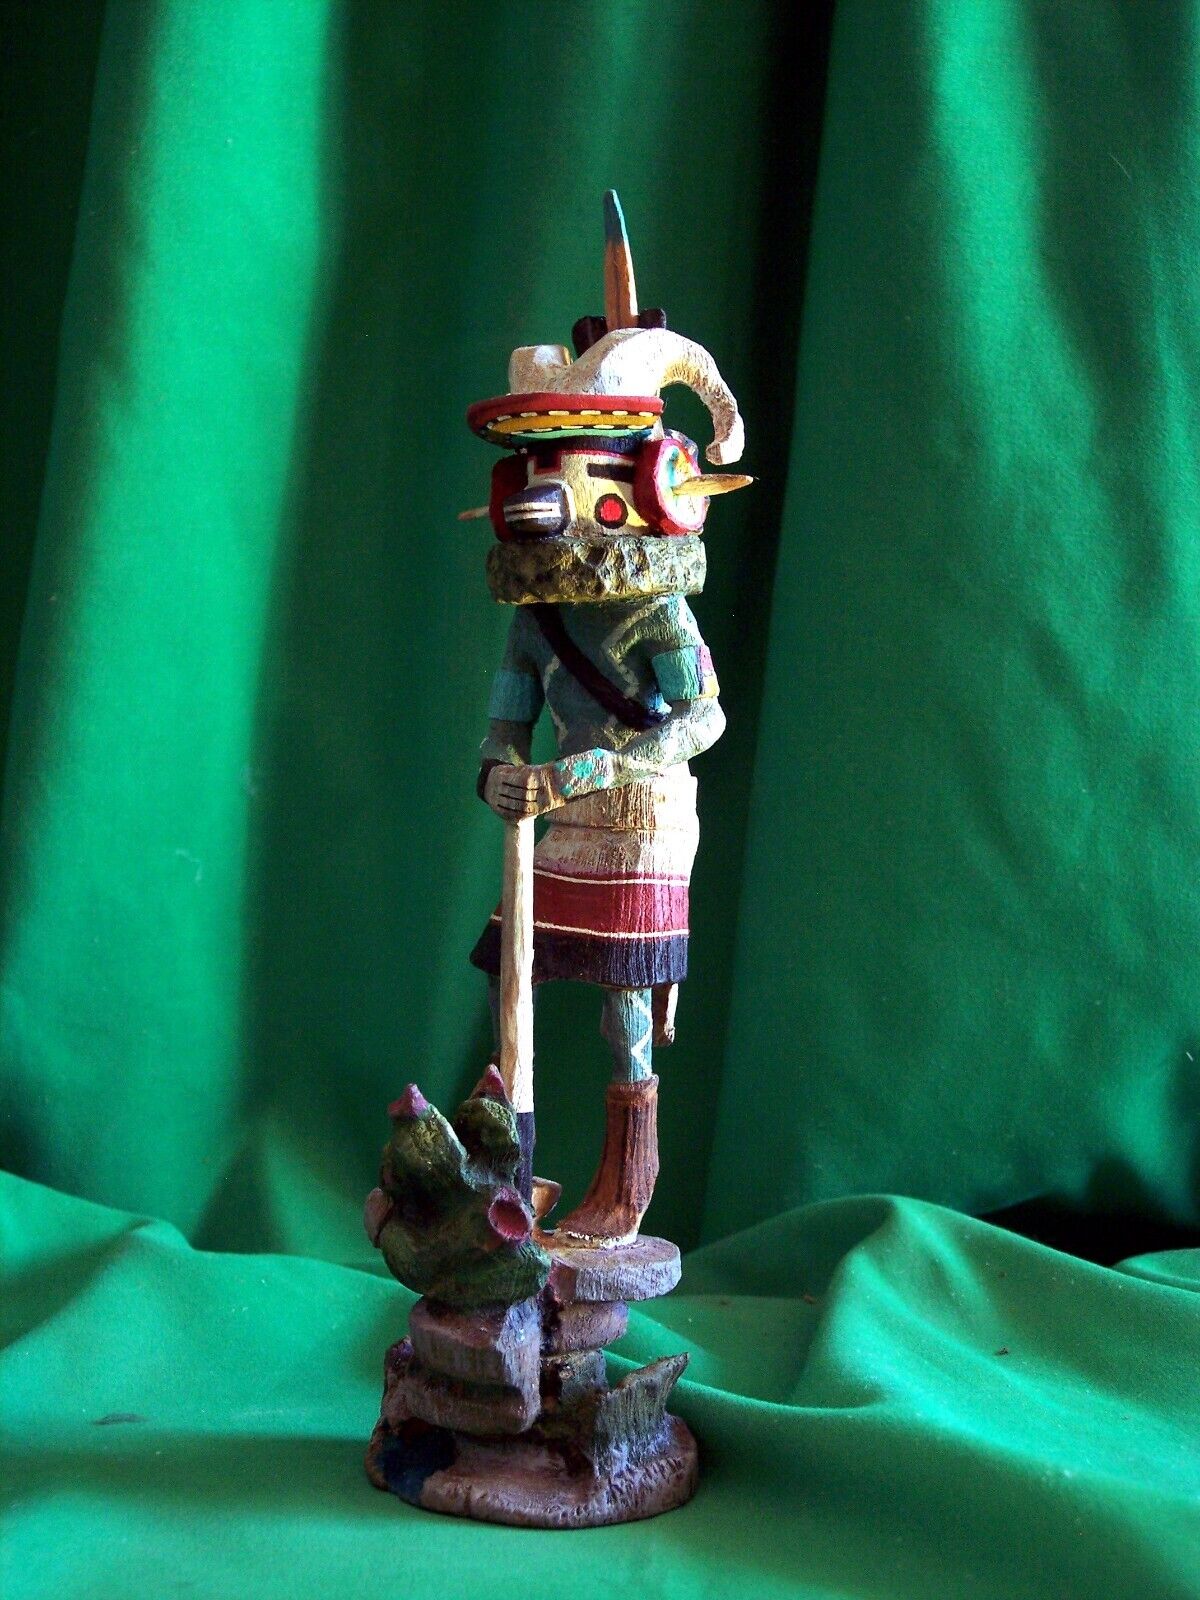 Hopi Kachina Doll - The Bighorn Sheep Kachina by Woody Sewemaenewa - Beautiful